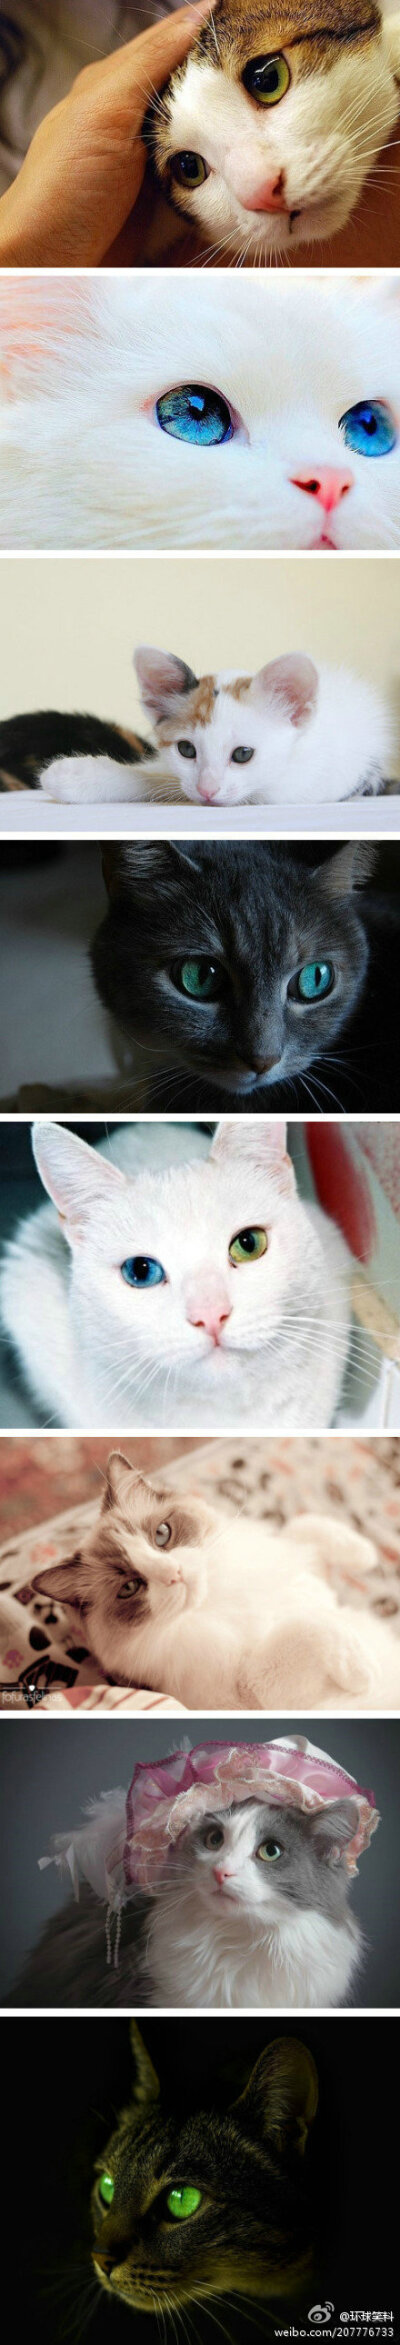 猫咪的眼睛美得像宝石一样